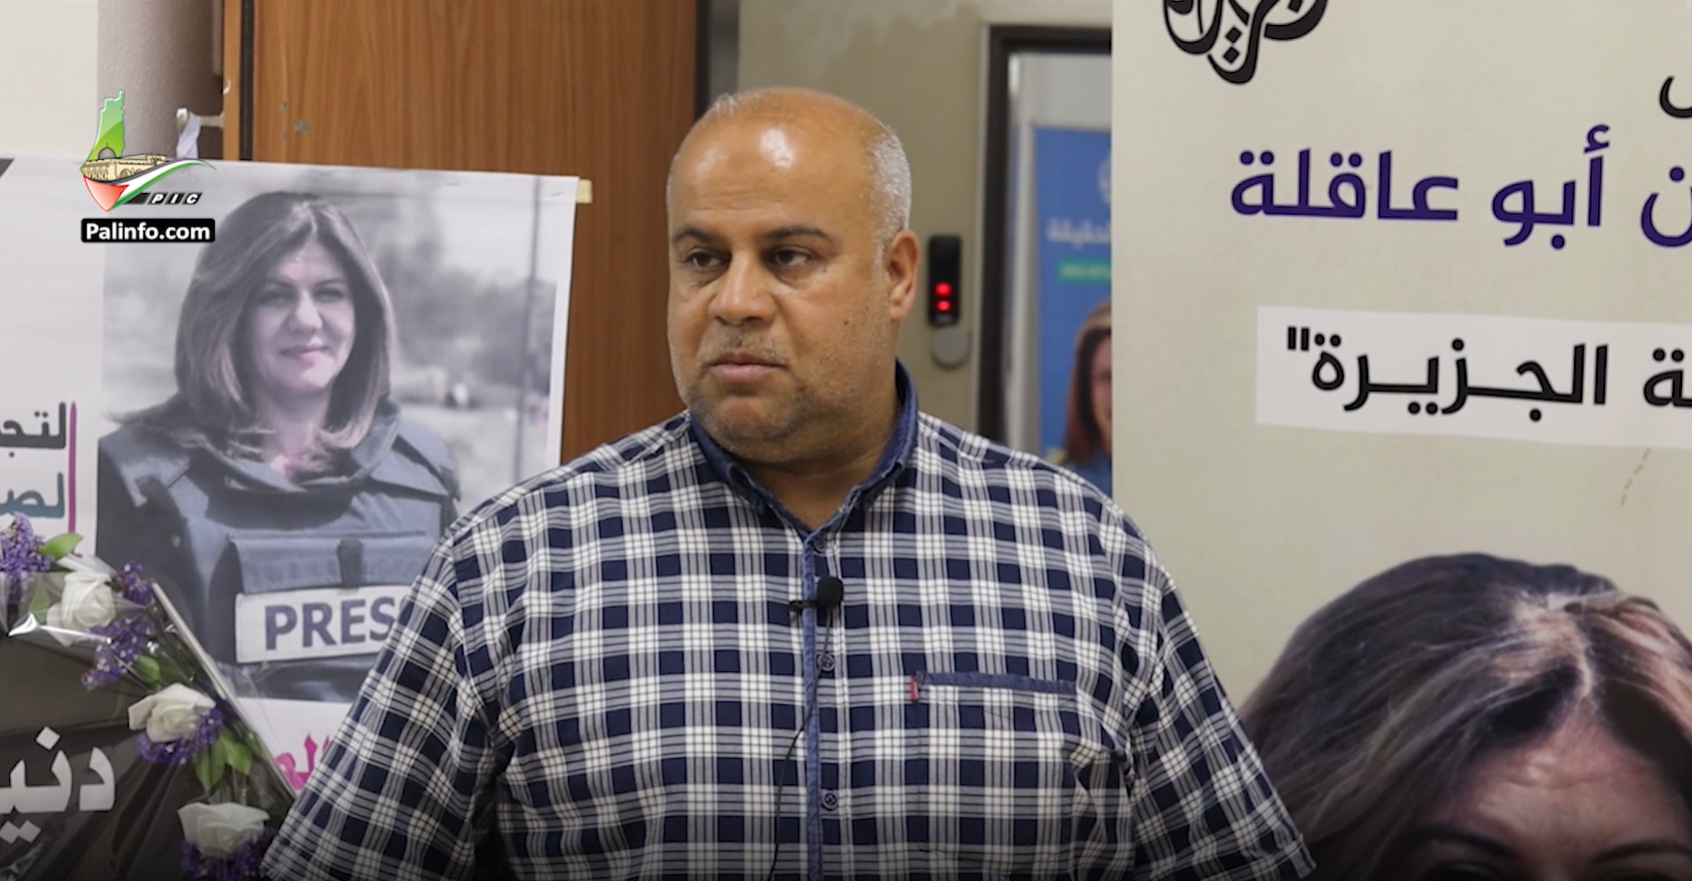 مدير الجزيرة بغزة: اغتيال شيرين لن يوقف مسيرة الصحافة الفلسطينية